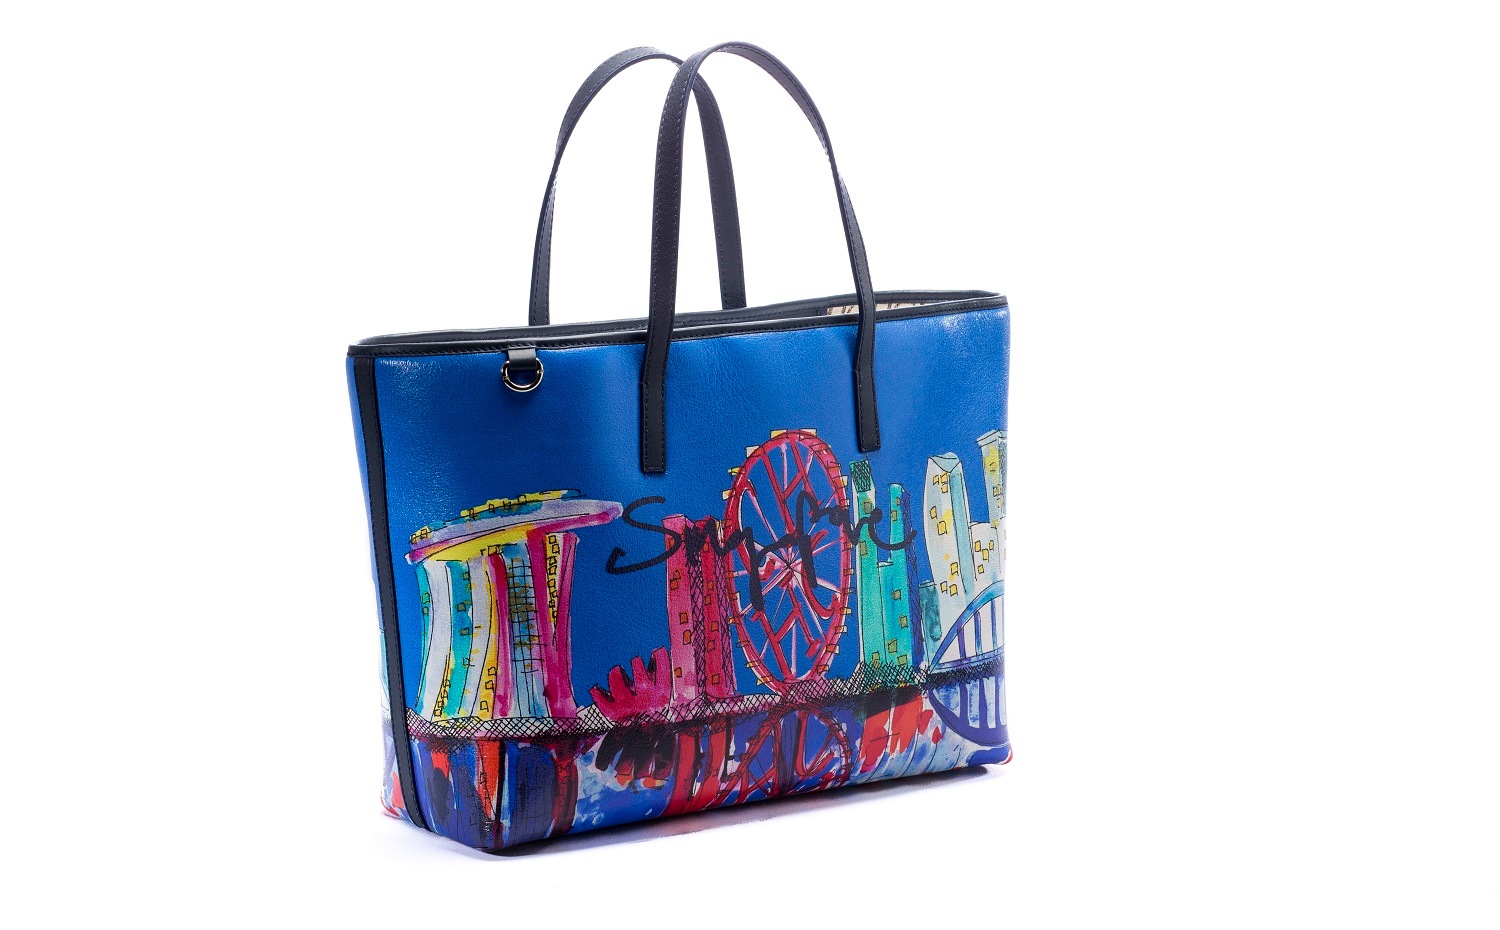 CH Carolina Herrera: Singapore Special Edition Shopping Bag